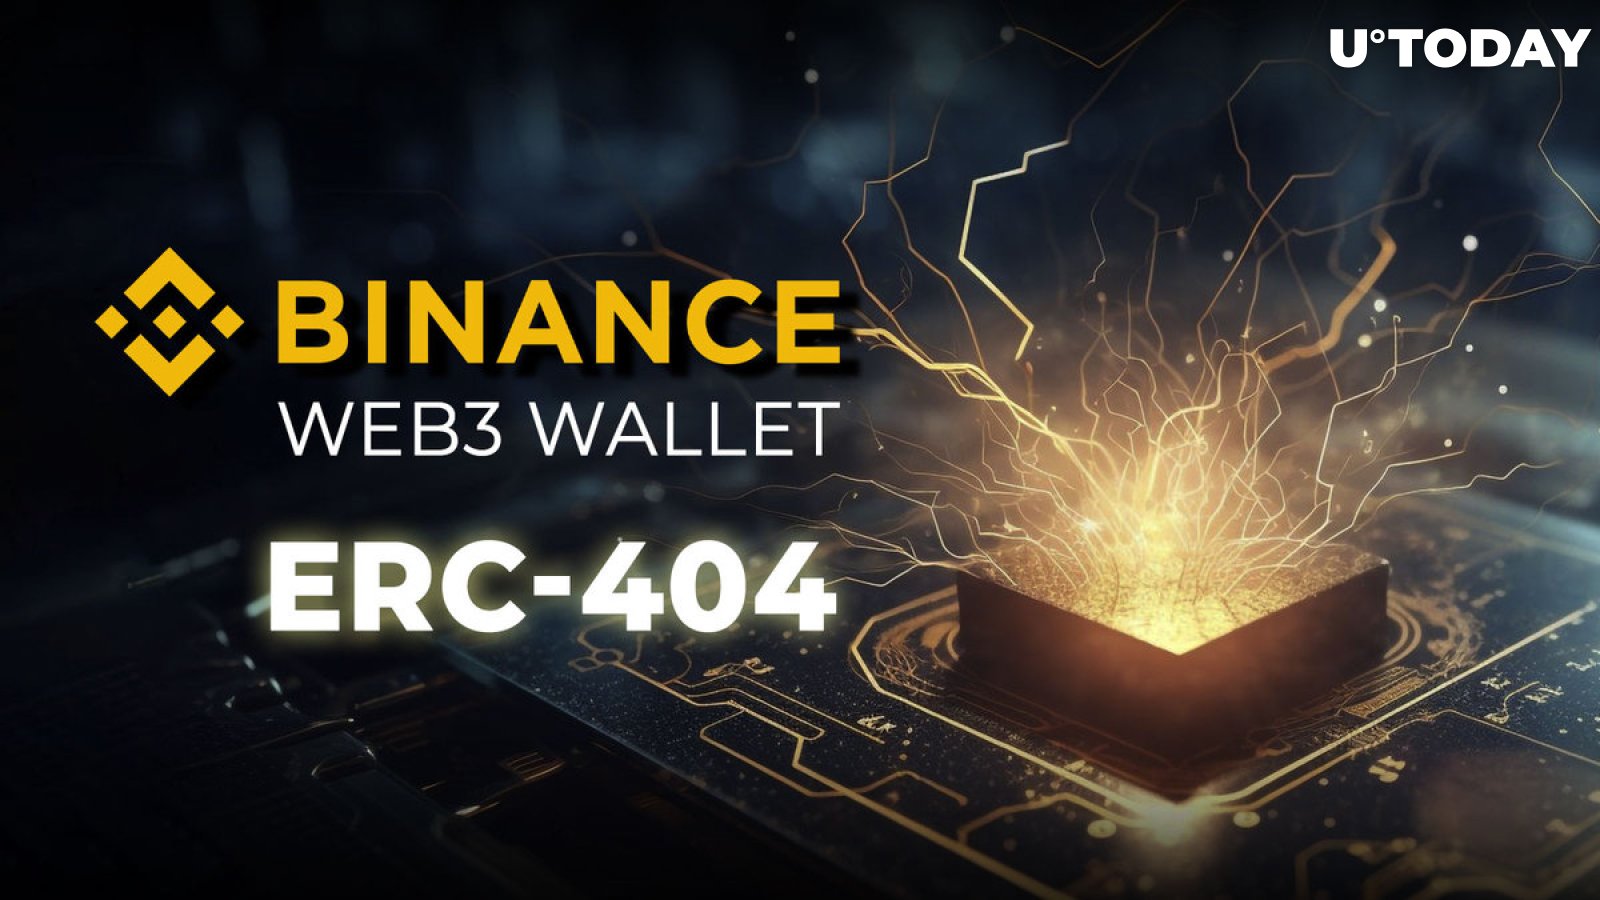 Binance Web3 Wallet ປະກາດການແຈກຈ່າຍ Crypto ຢ່າງຫຼວງຫຼາຍເພື່ອສະເຫຼີມສະຫຼອງການລວມ ERC-404